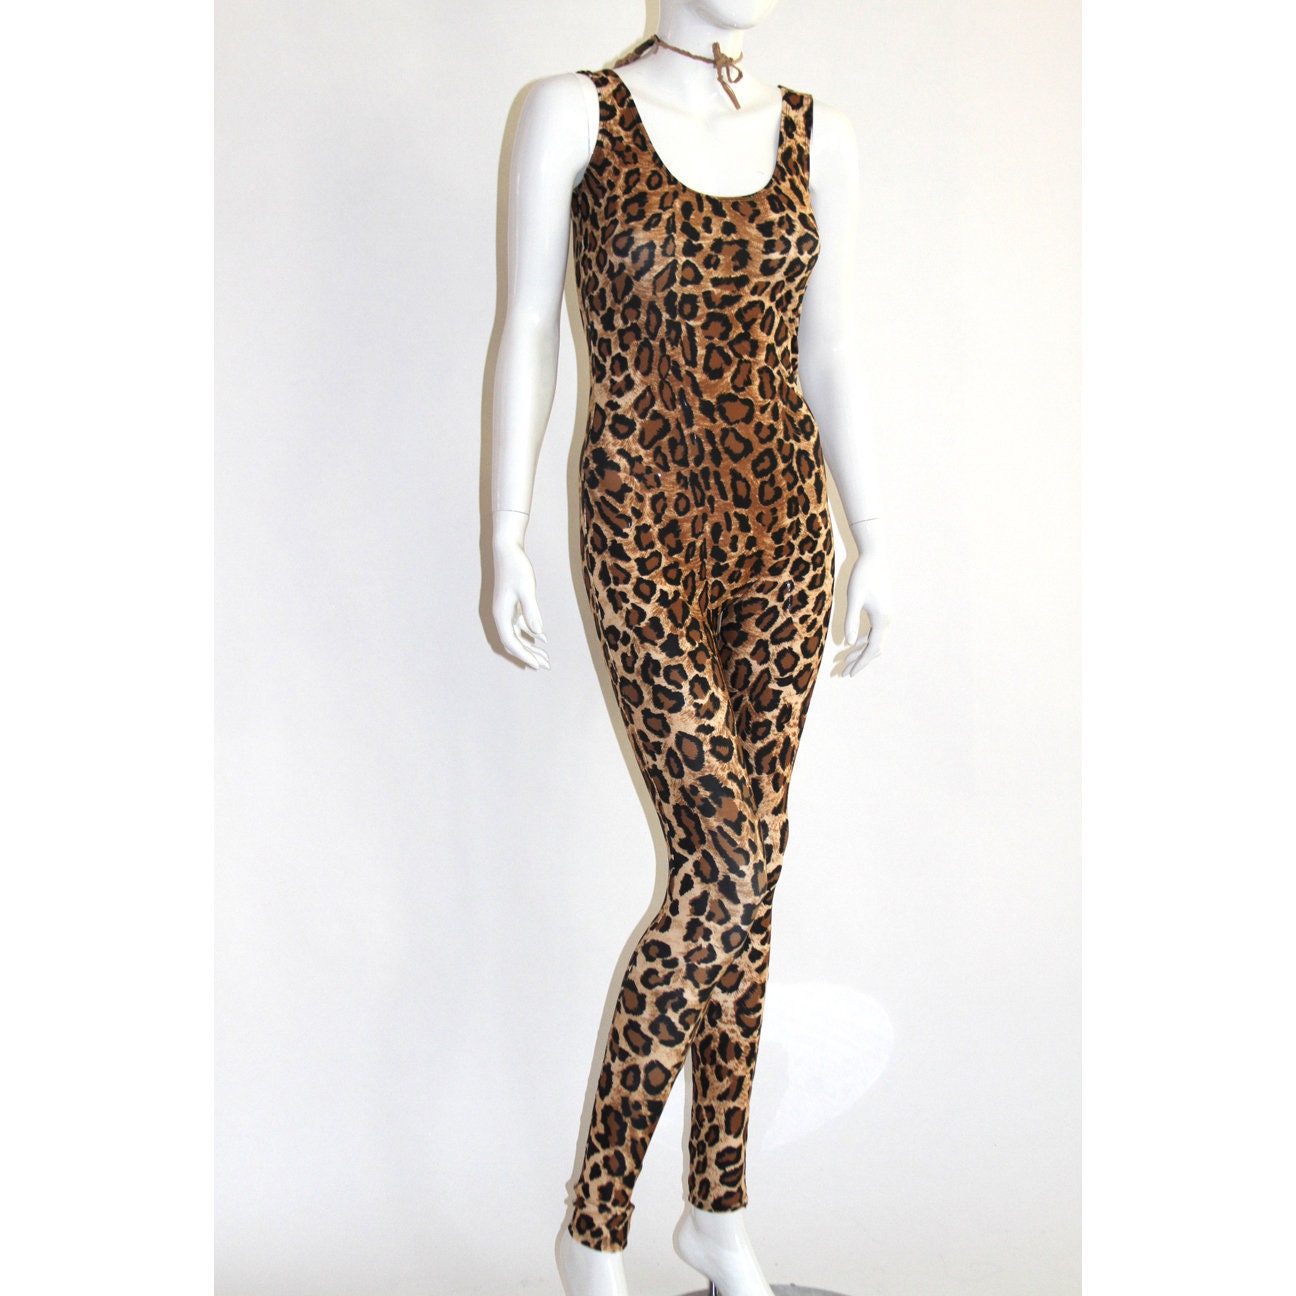 Leopard Catsuit Spandex Jumpsuit Dance Unitard Bodysuit Full | Etsy